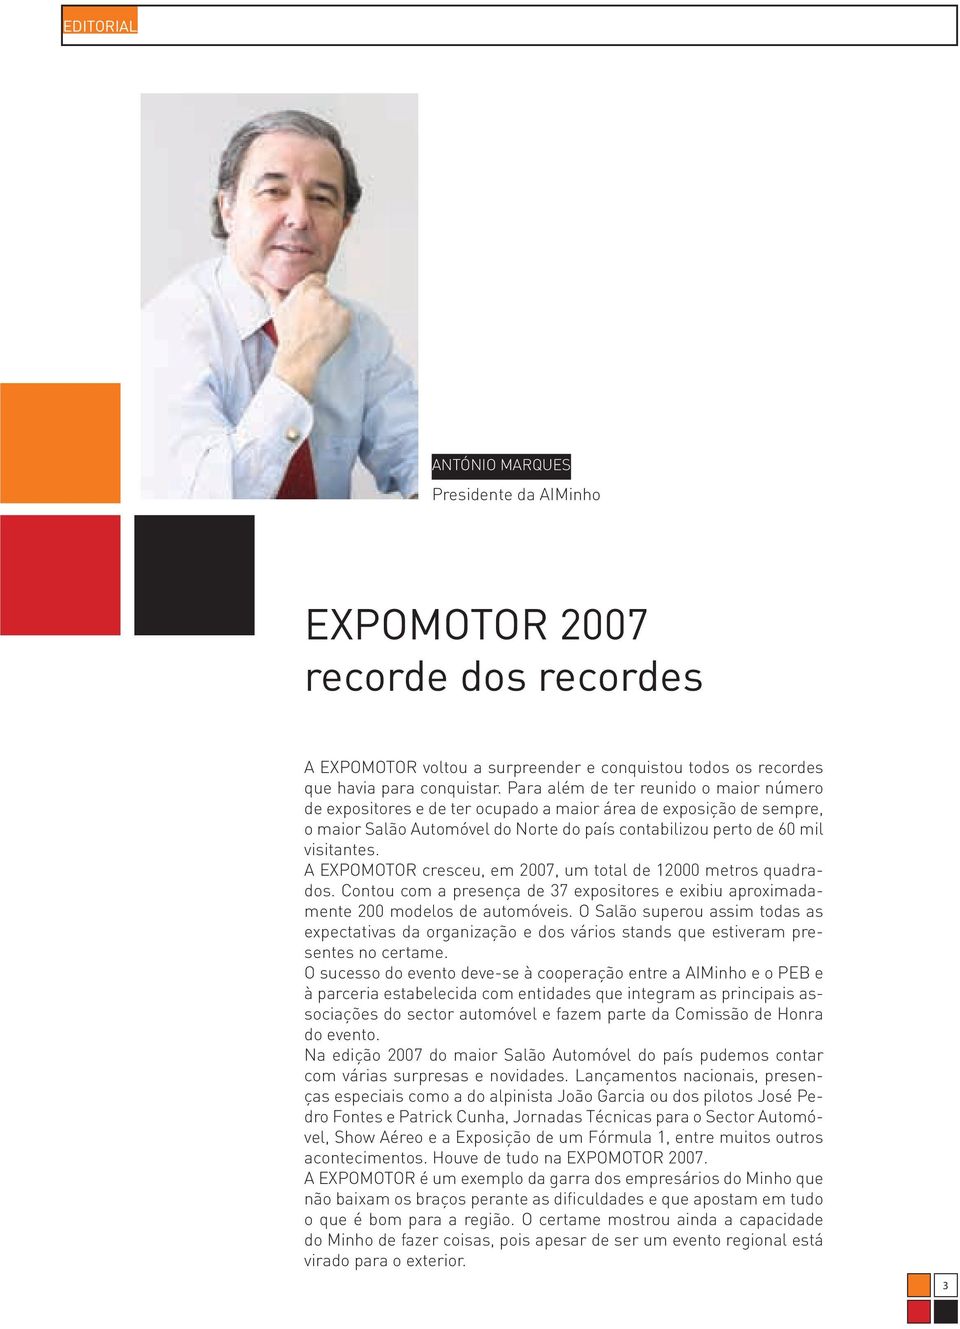 A EXPOMOTOR cresceu, em 2007, um total de 12000 metros quadrados. Contou com a presença de 37 expositores e exibiu aproximadamente 200 modelos de automóveis.